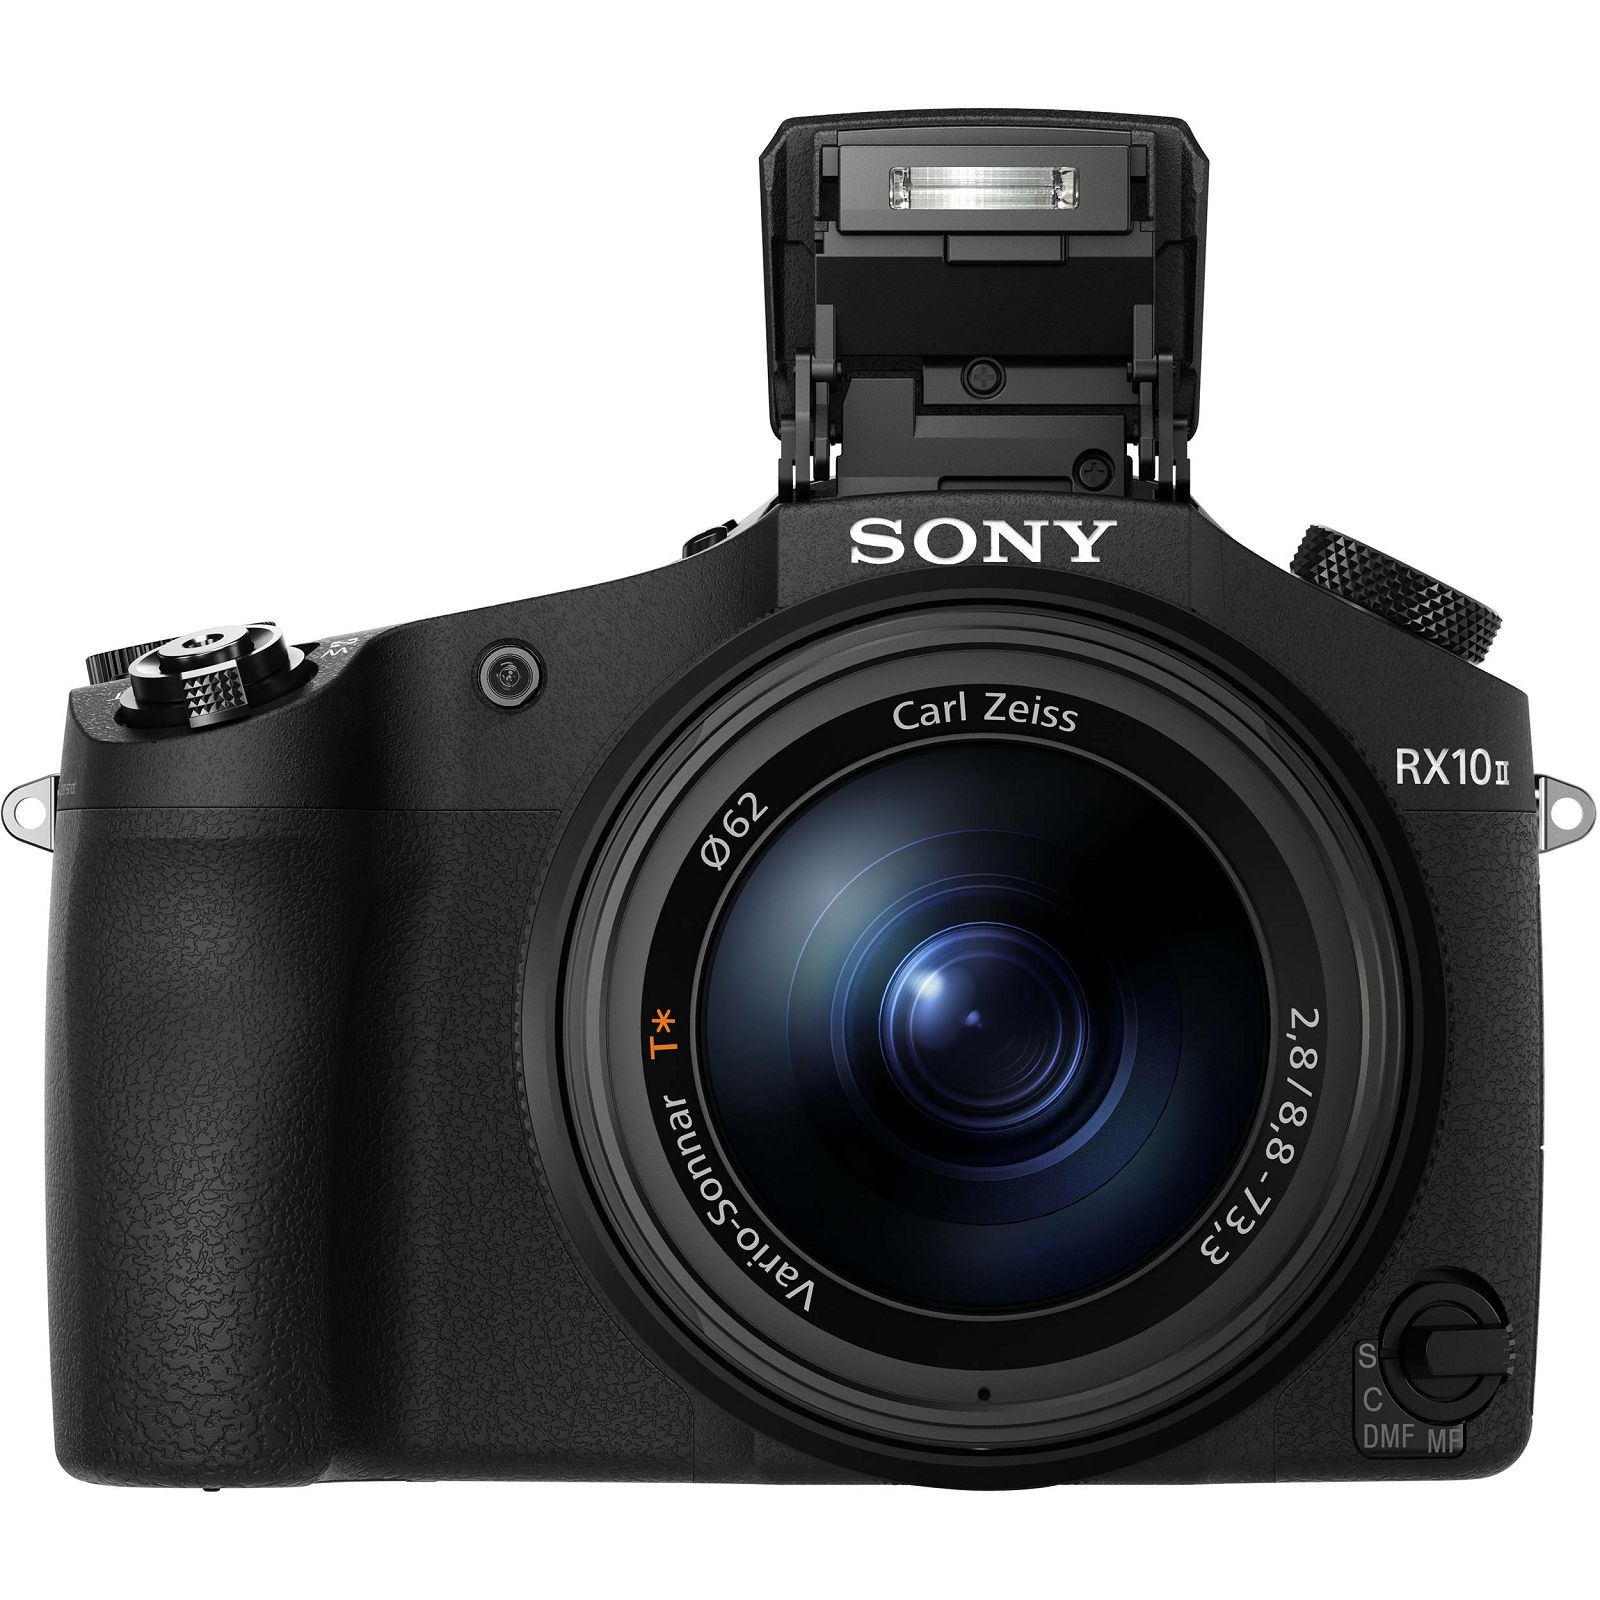 Sony Cyber-shot DSC-RX10 II kompaktni digitalni fotoaparat s integriranim objektivom Carl Zeiss Vario-Sonnar T 8.8-73.3mm f/2.8 Digital Camera DSC-RX10M2 DSCRX10 RX10 M2 DSCRX10M2 (DSCRX10M2.CE3)